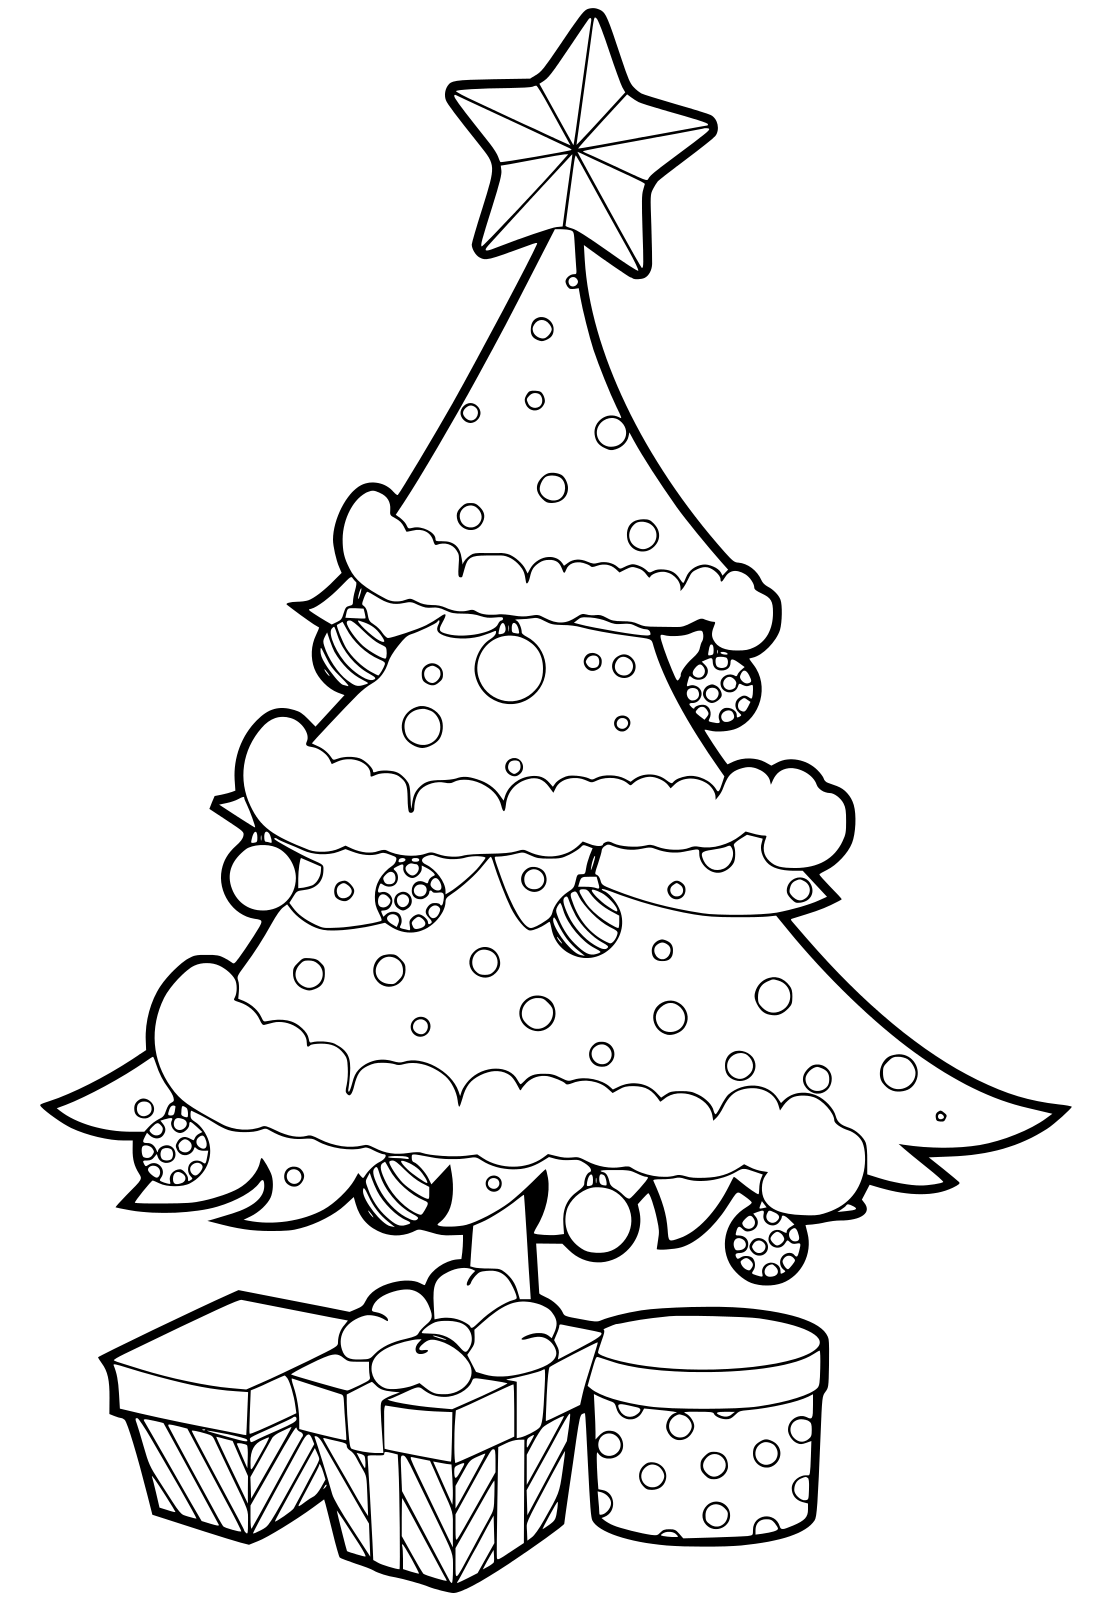 Tranh tô màu hộp quà để xung quanh cây thông Noel